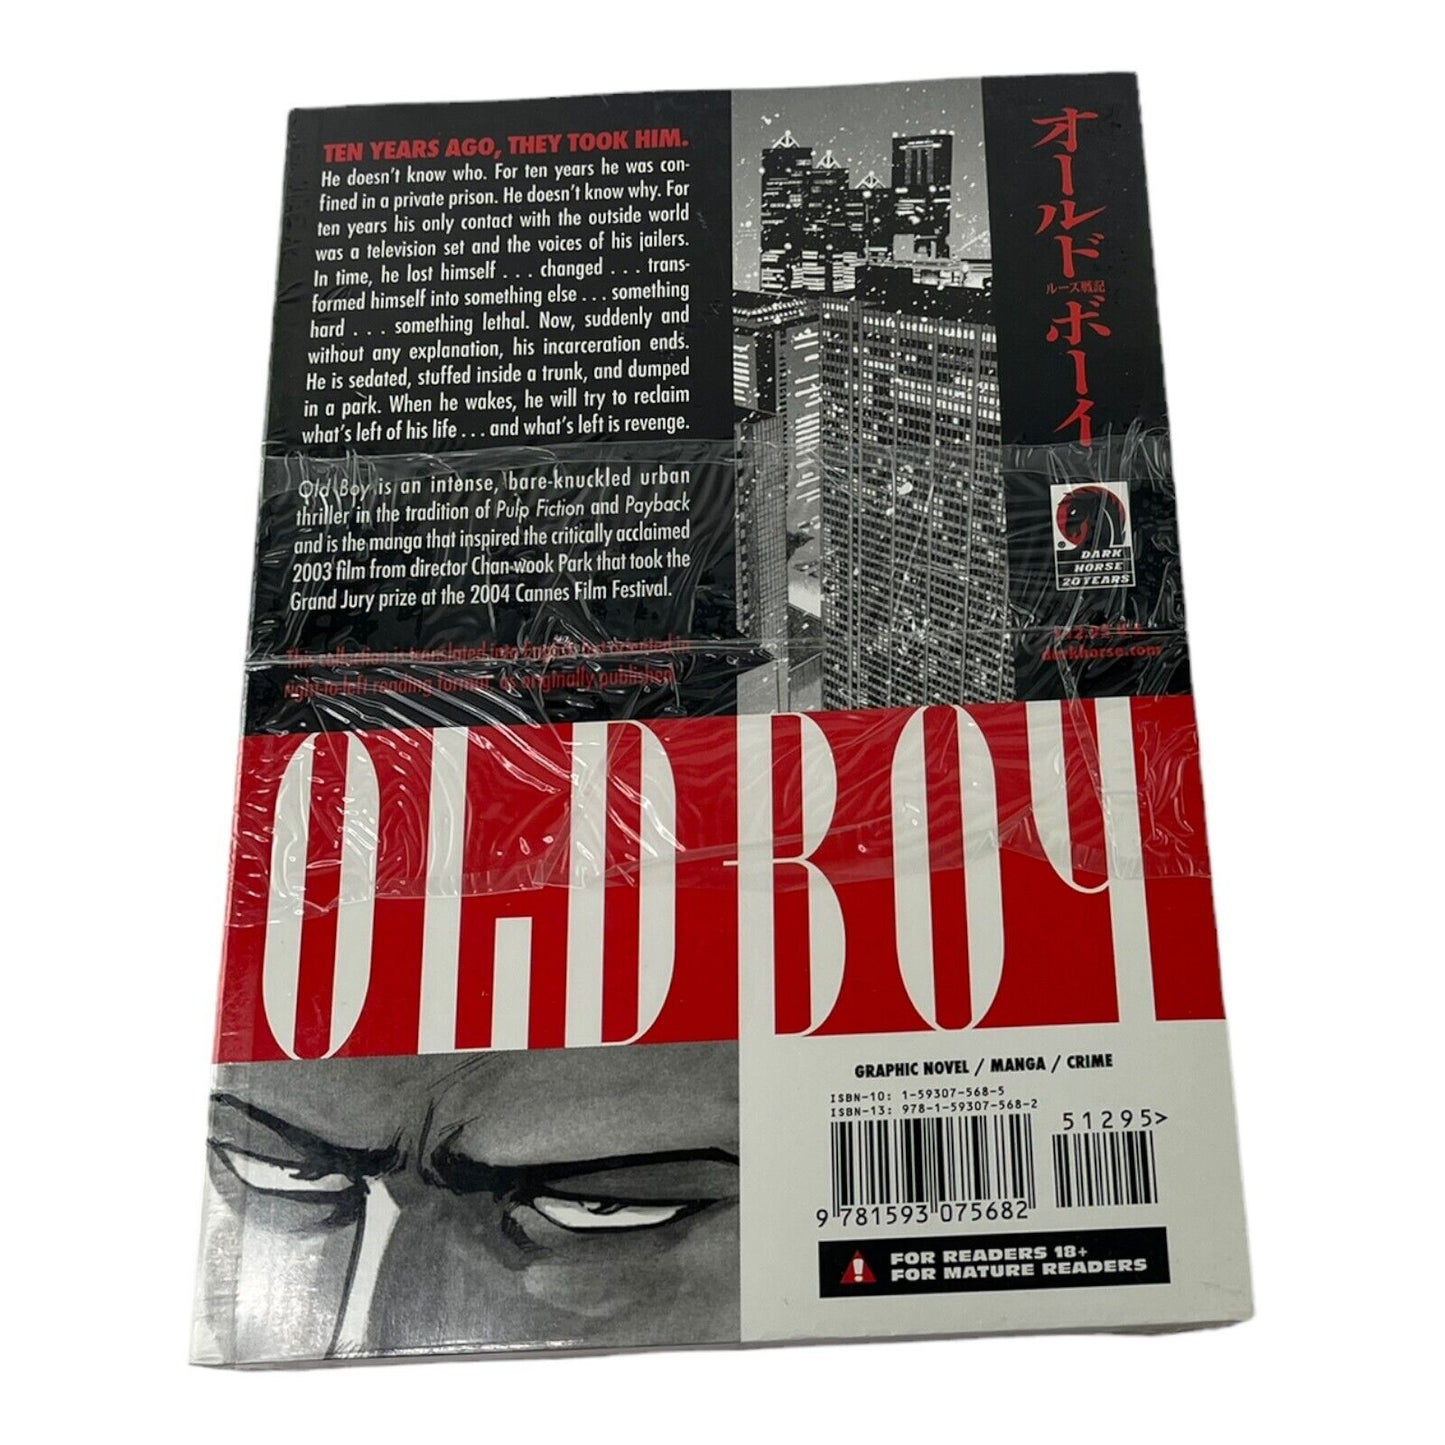 Old Boy Volume 1 Manga Graphic Novel Dark Horse Garon Tsuchiya Sealed